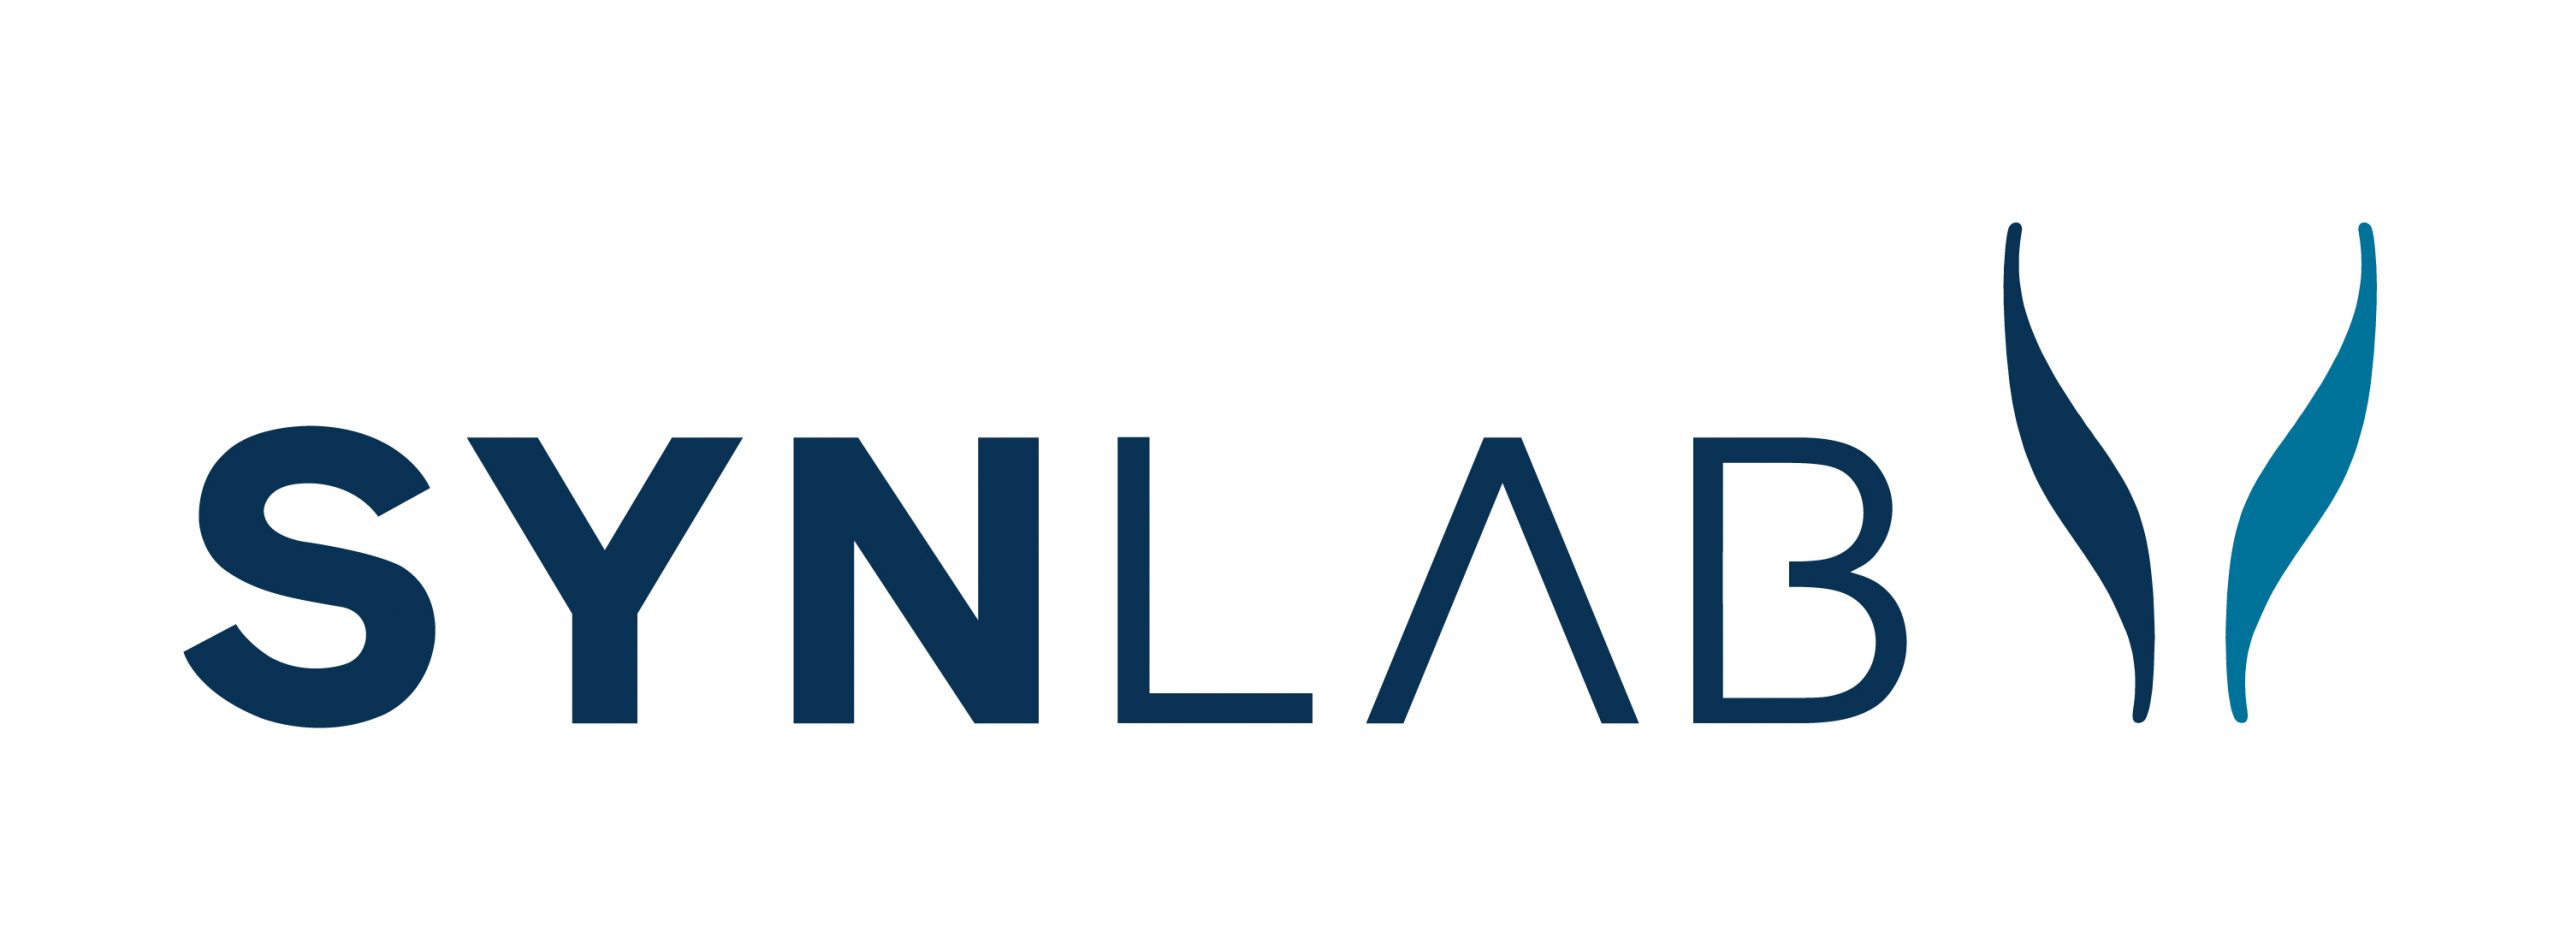 SYNLAB_logo